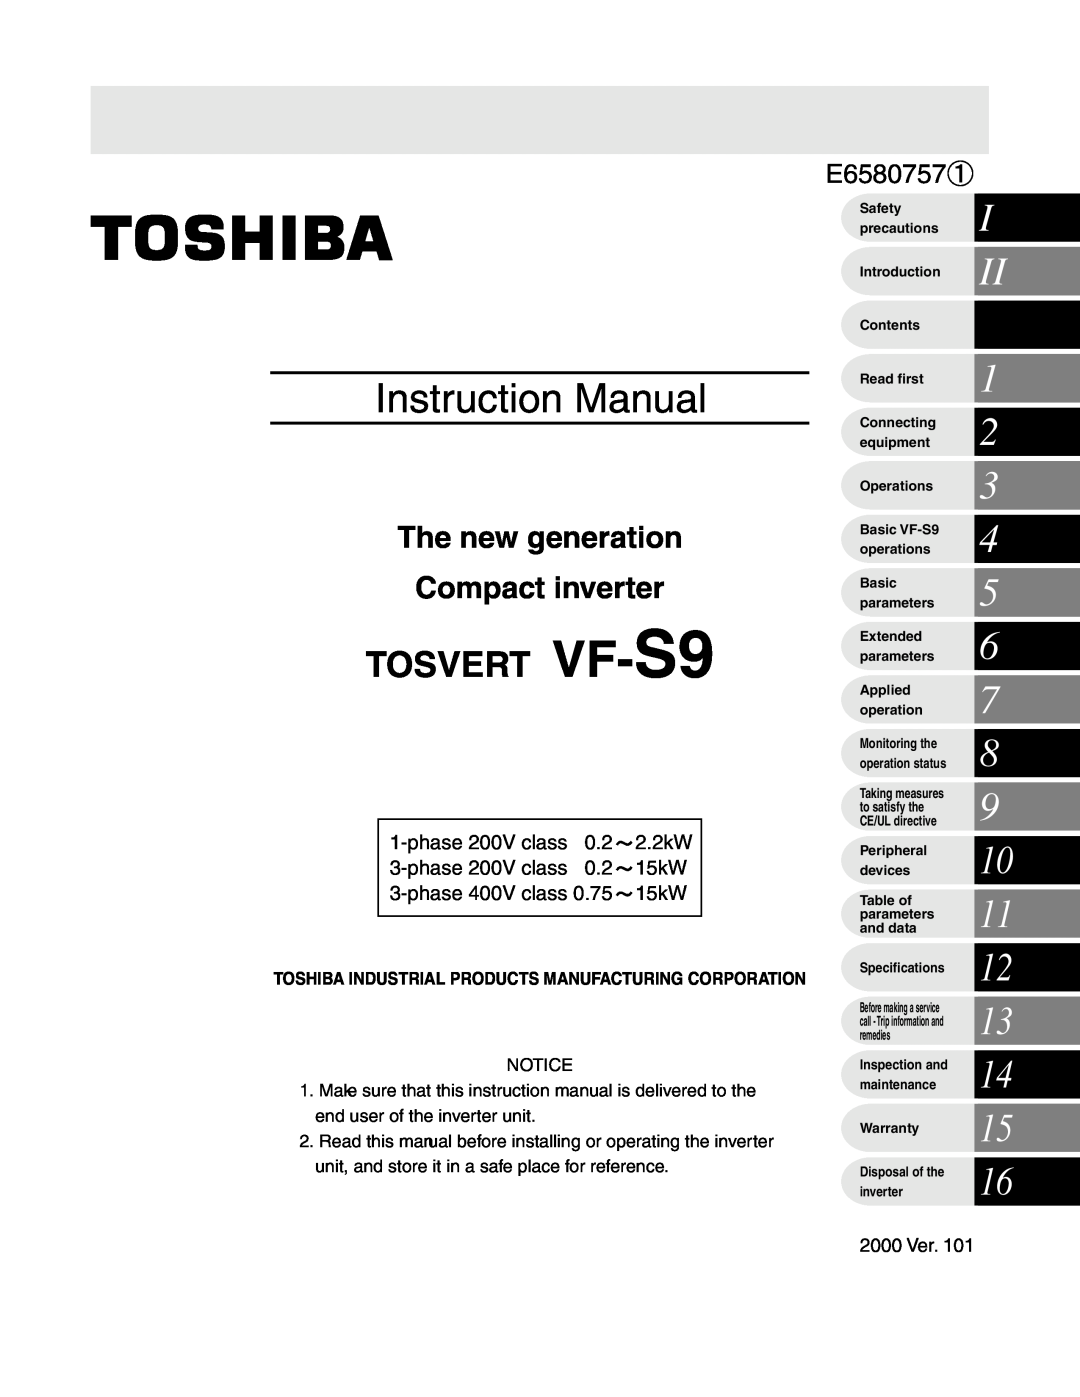 Toshiba VF-S9 manual phase 200V class 0.2 2.2kW 3-phase 200V class 0.2 15kW, phase 400V class 0.75 15kW, 2000 Ver 